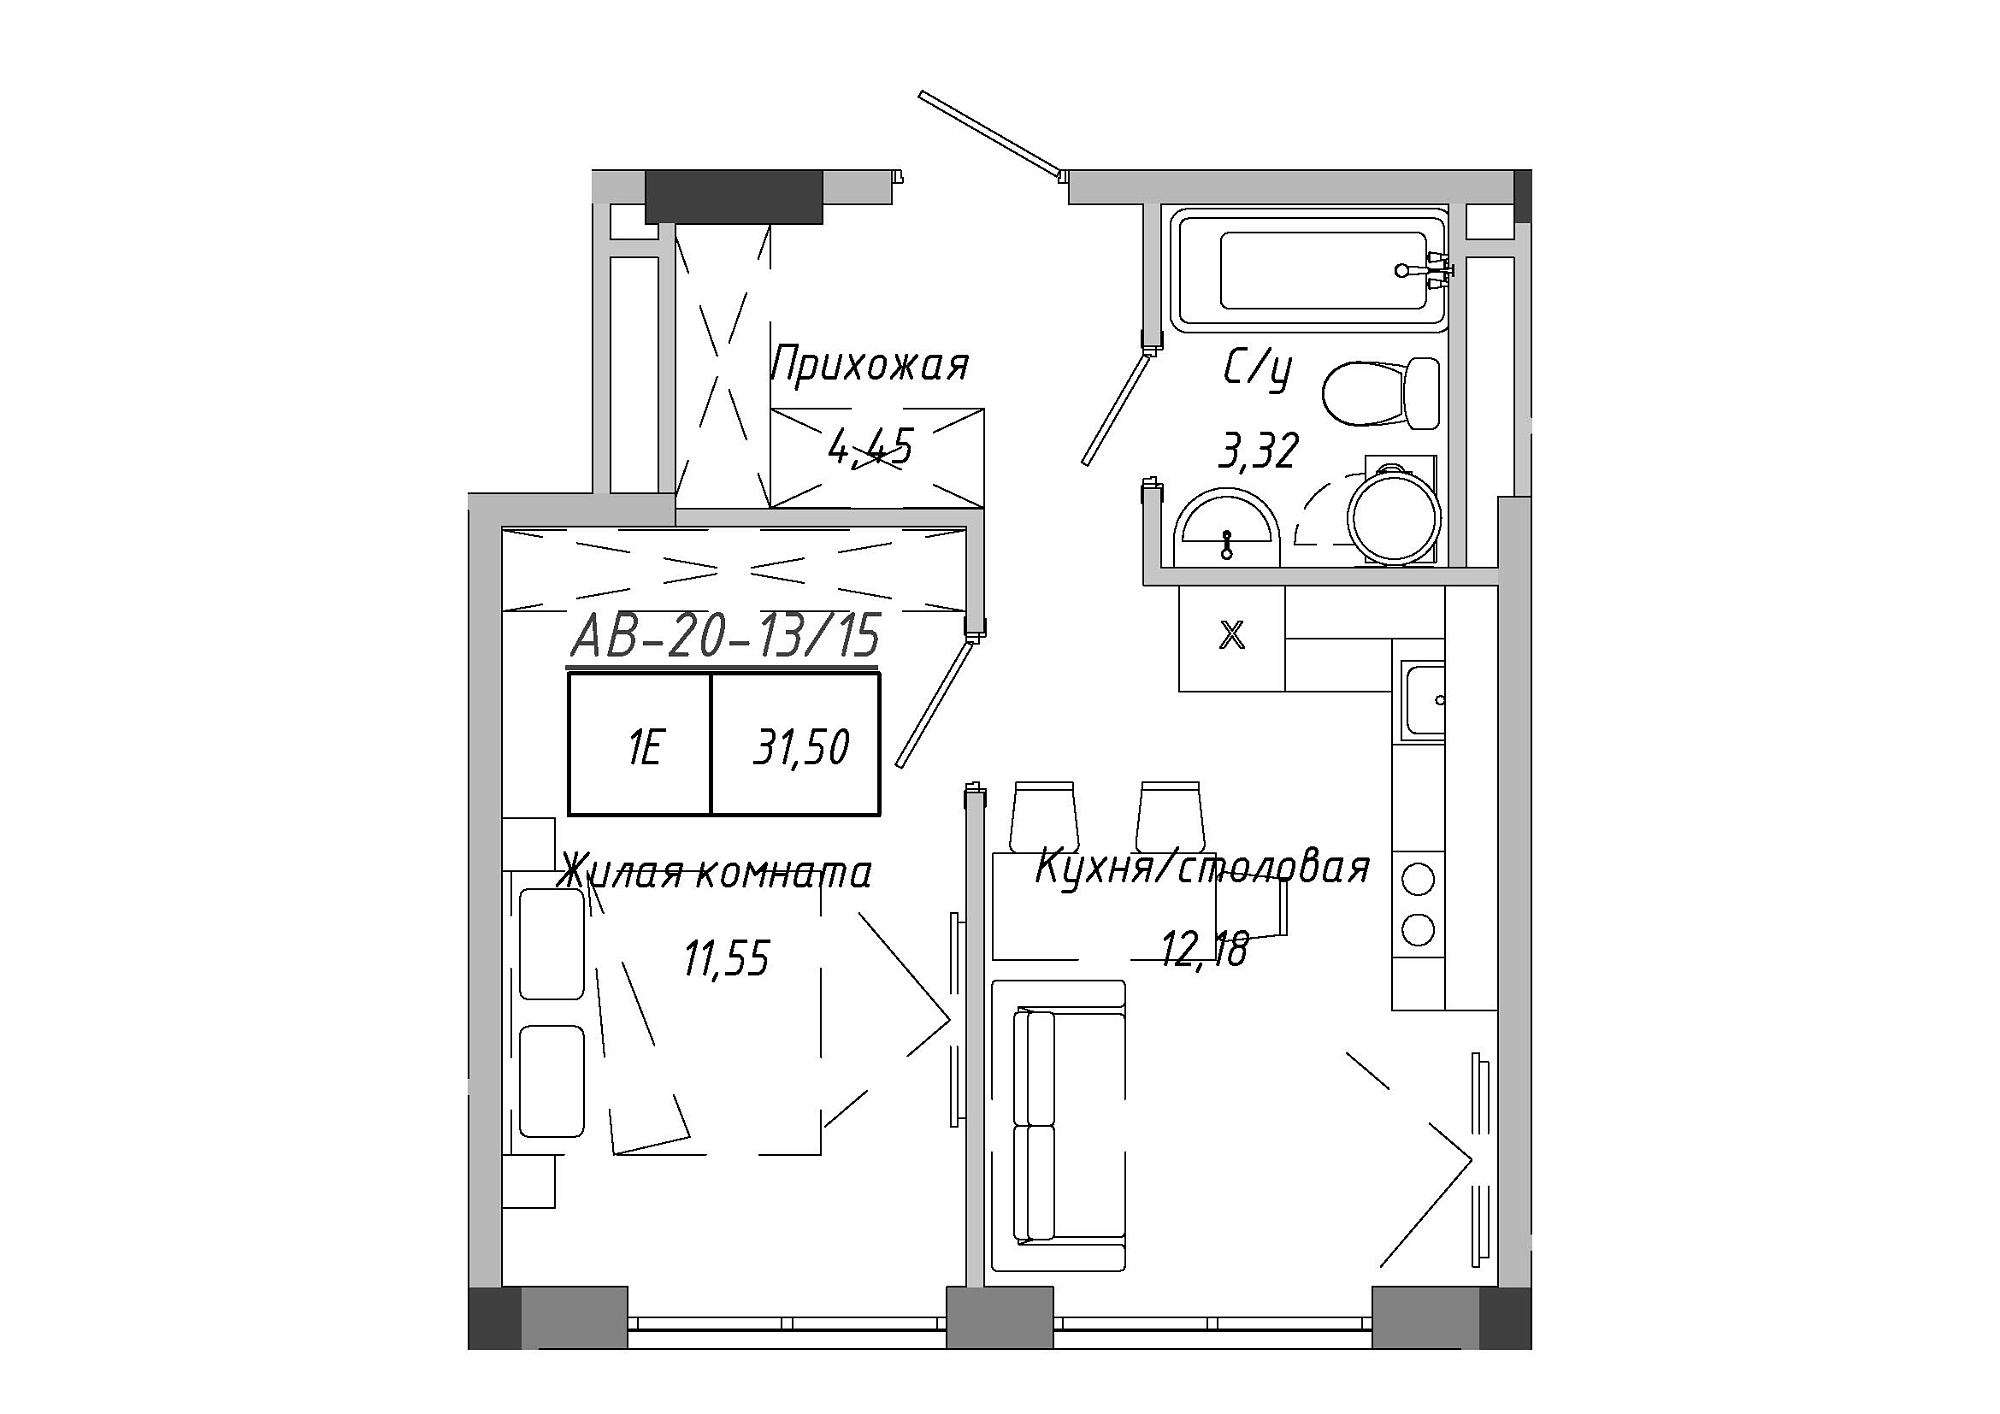 Планування 1-к квартира площею 31.5м2, AB-20-13/00115.